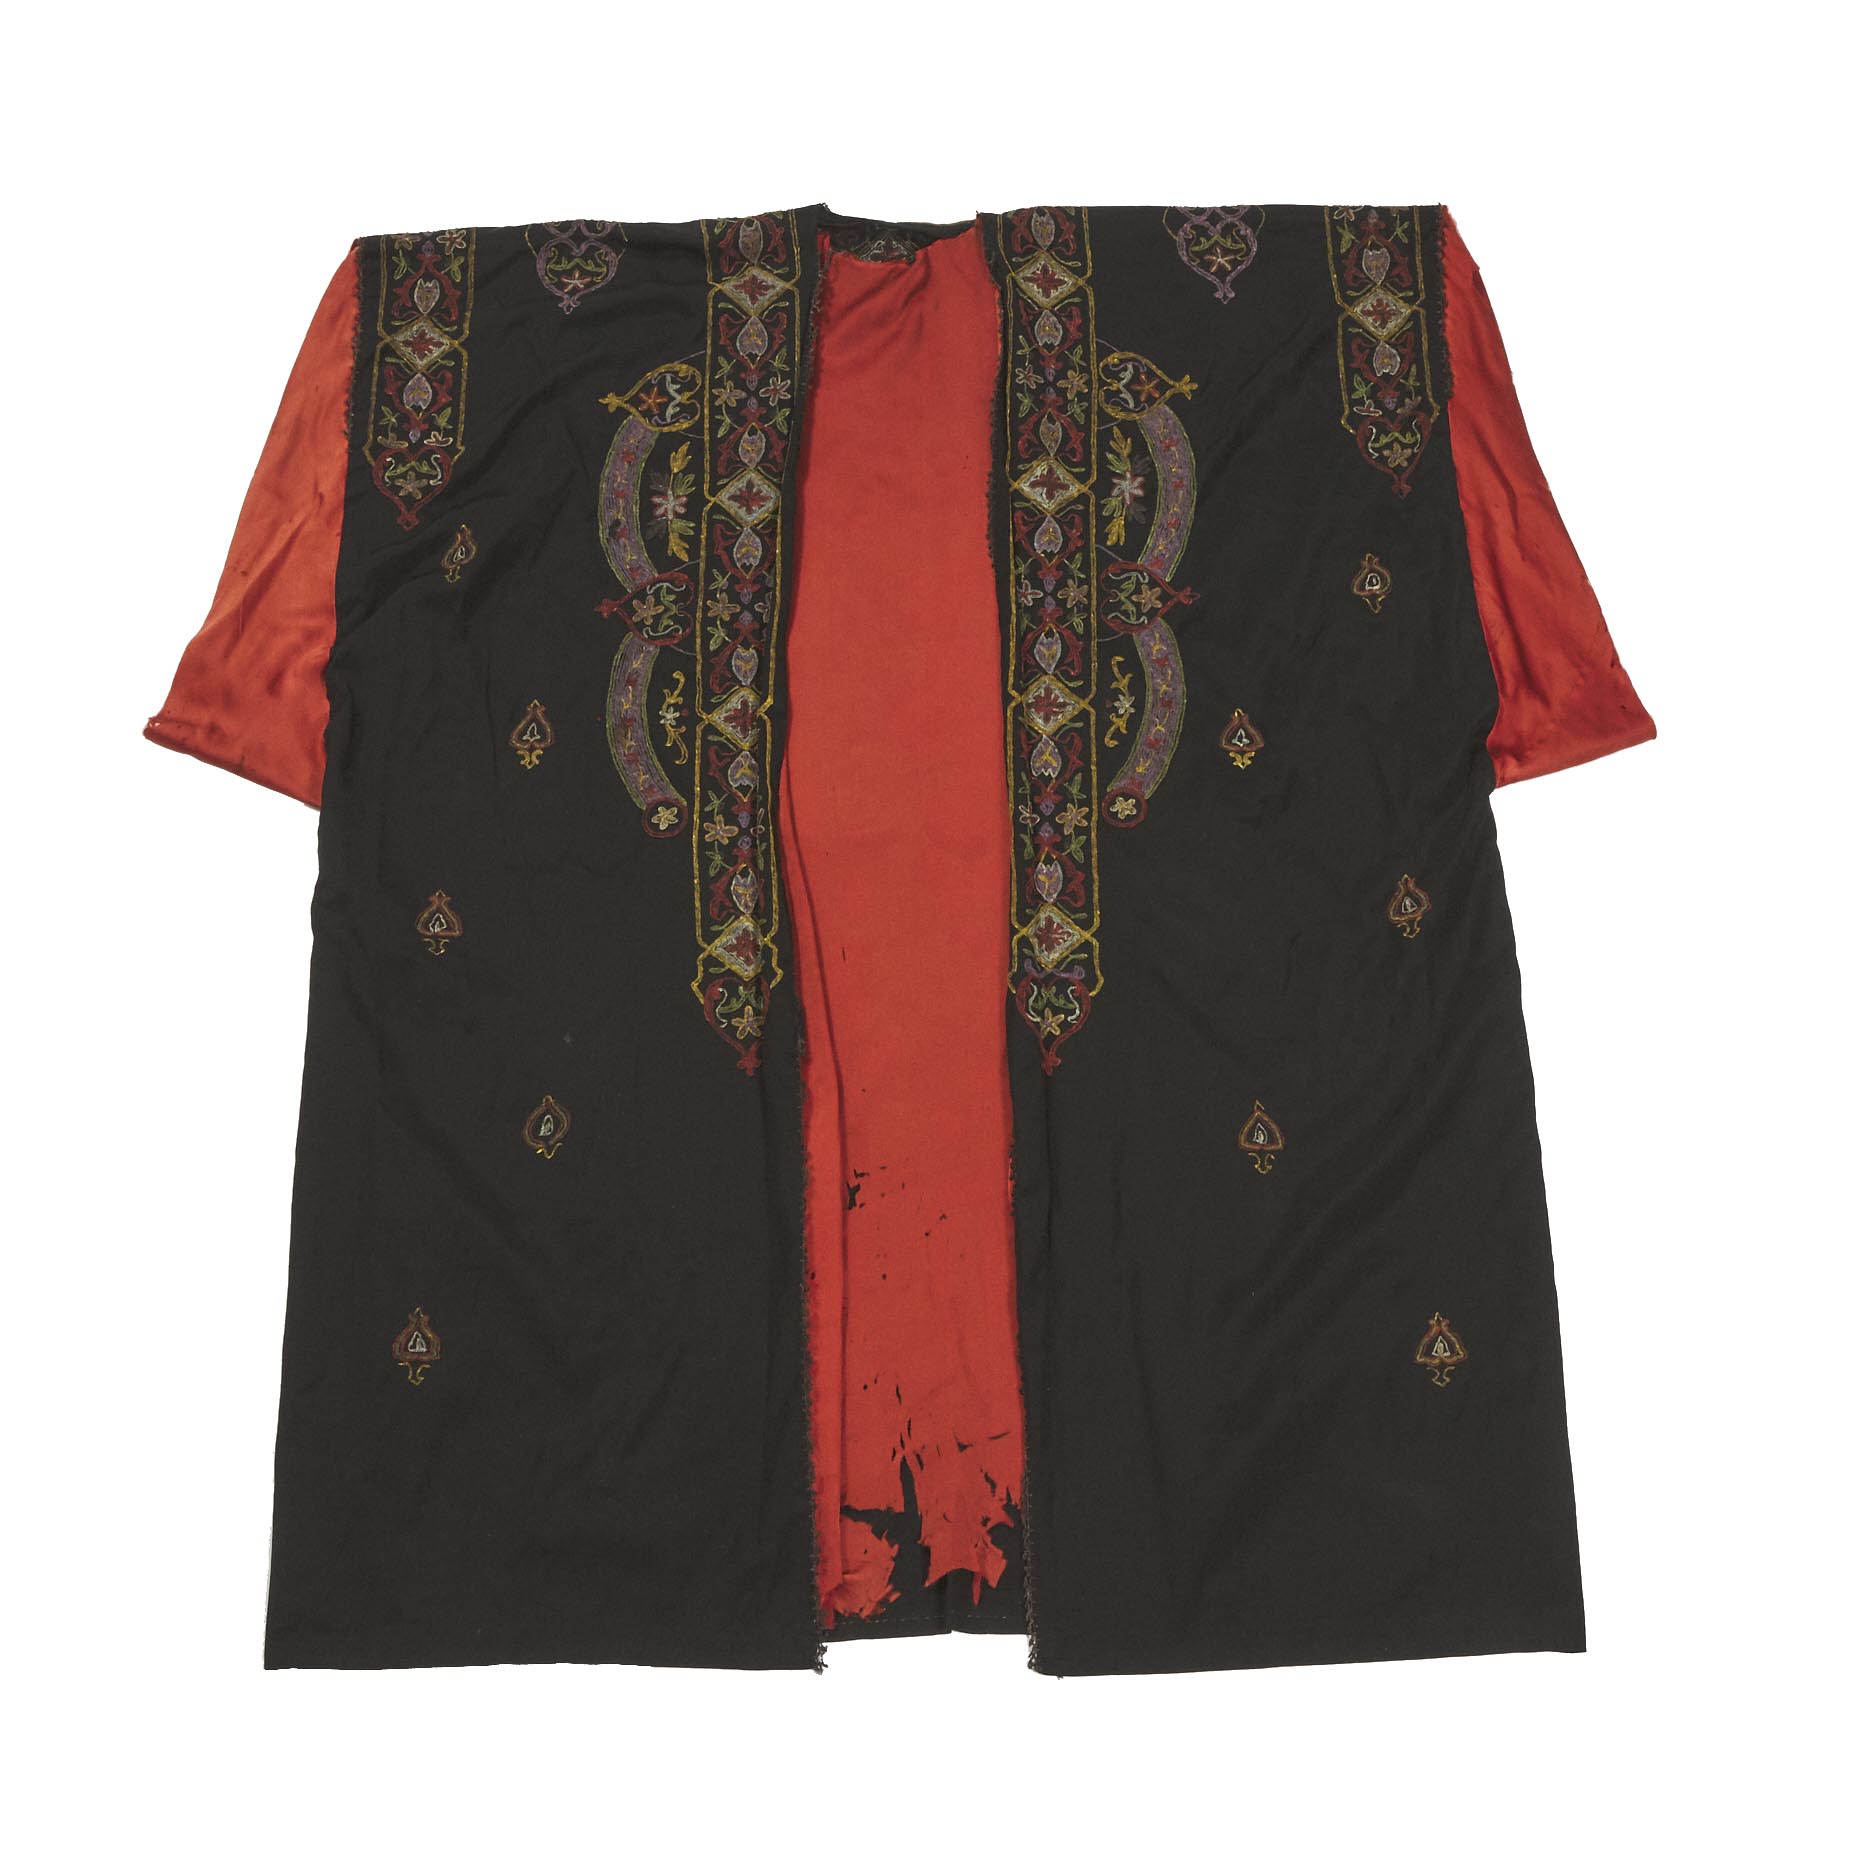 Ottoman Silk Robe with Metallic Thread, Turkish, late 19th century